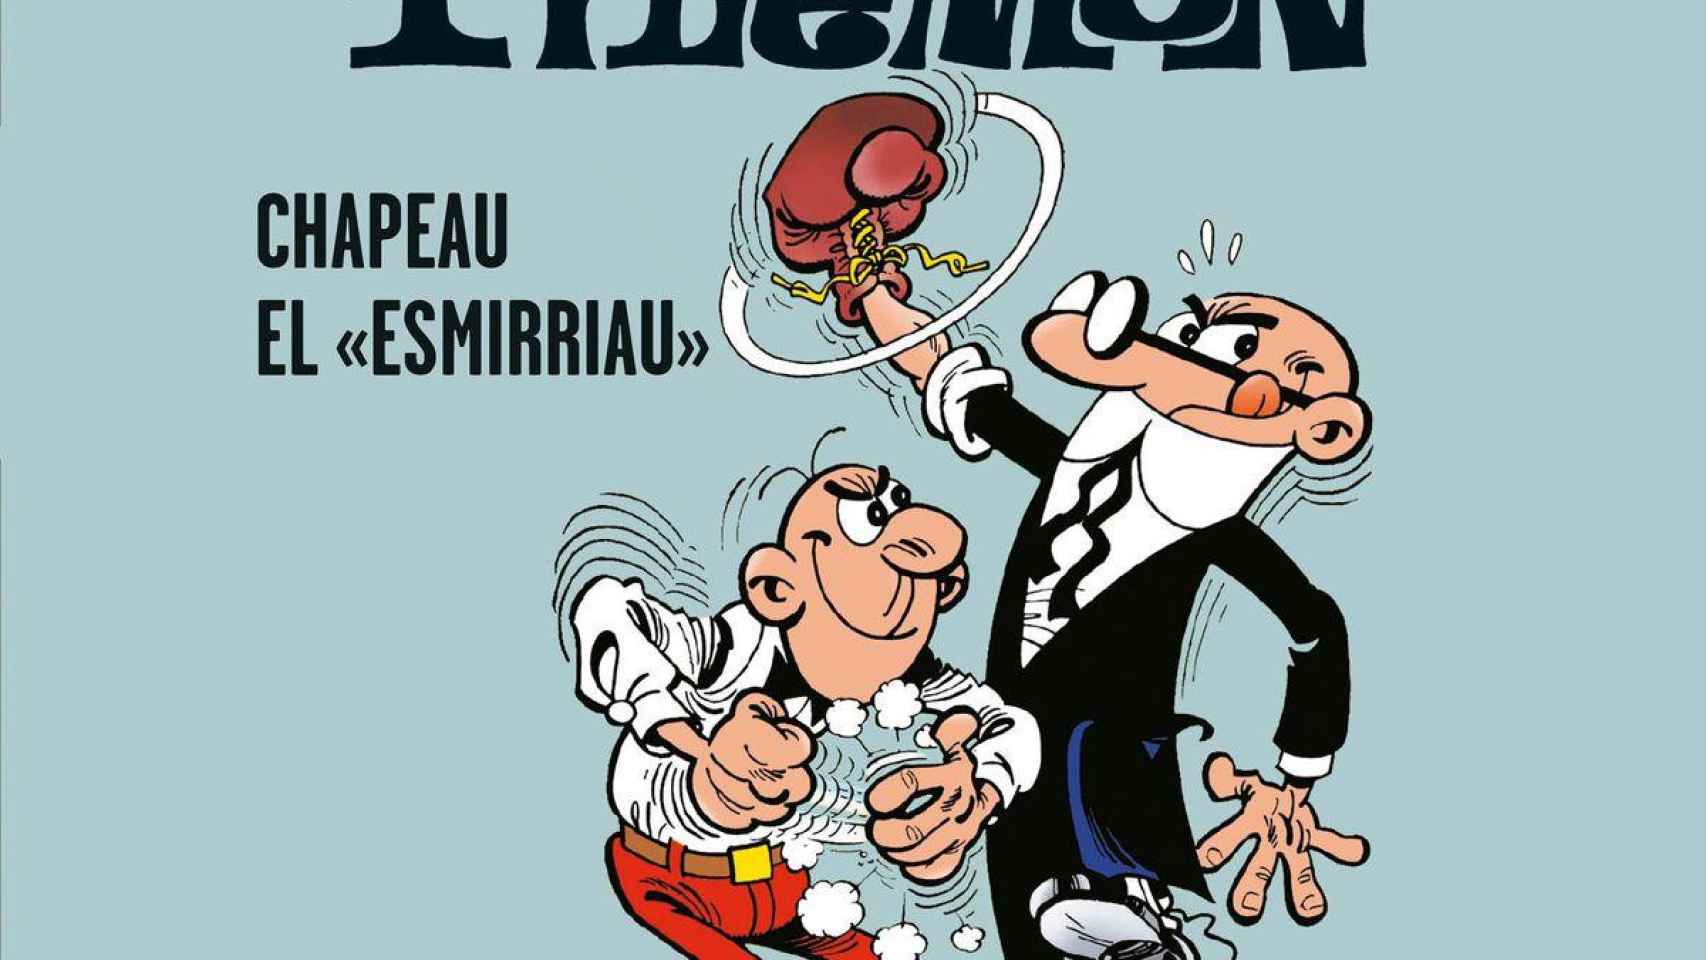 'Chapeau el 'esmirriau'', una de las historietas de Mortadelo y Filemón / BRUGUERA